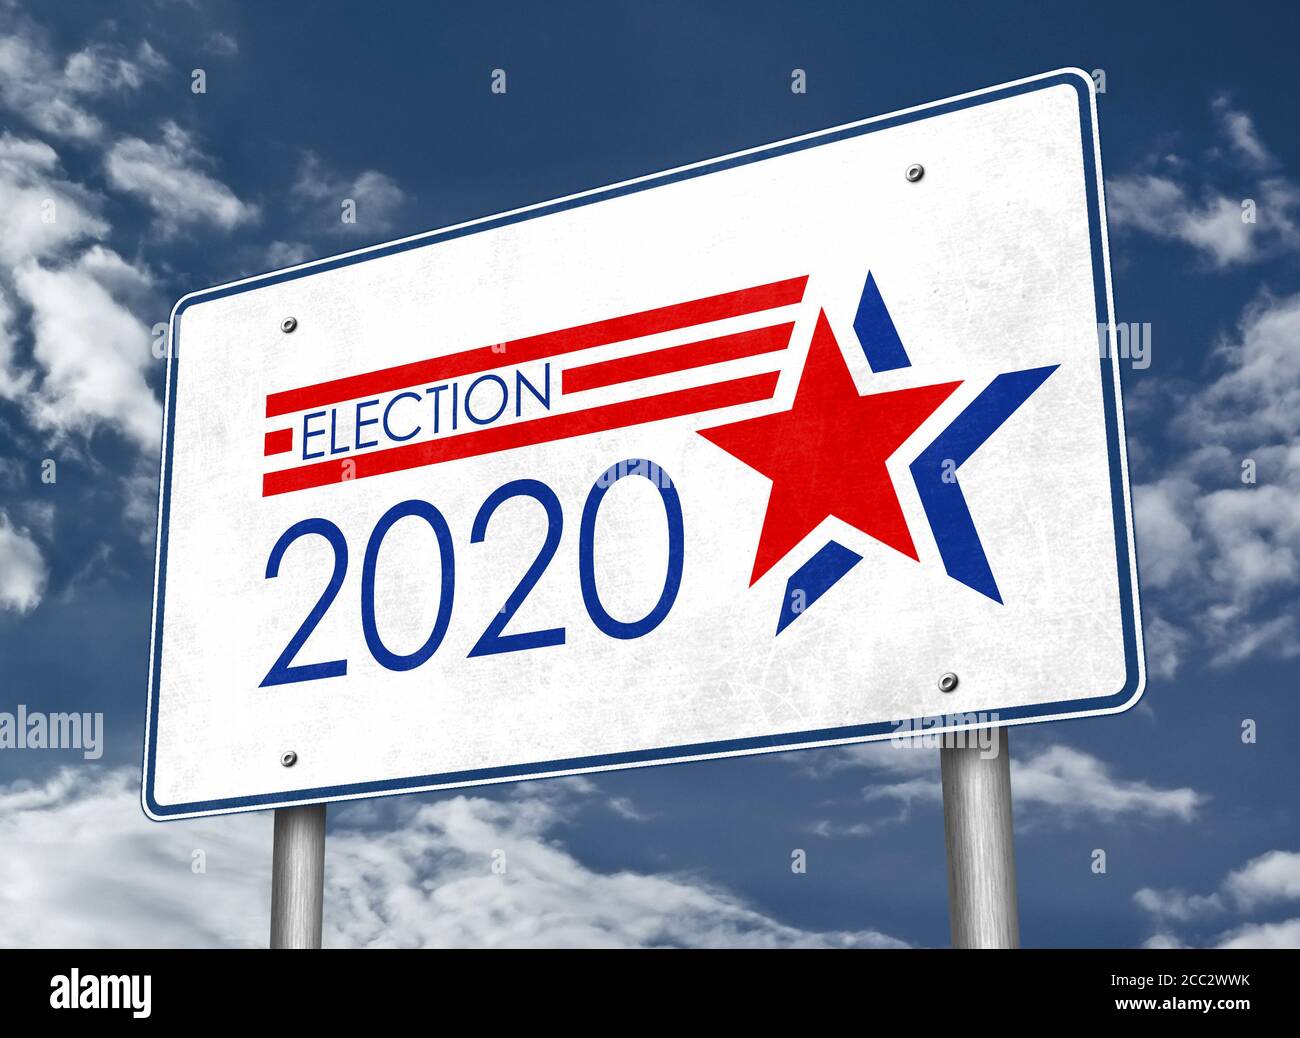 Präsidentschaftswahl 2020 in den Vereinigten Staaten von Amerika - Straßenschild Informationen Stockfoto